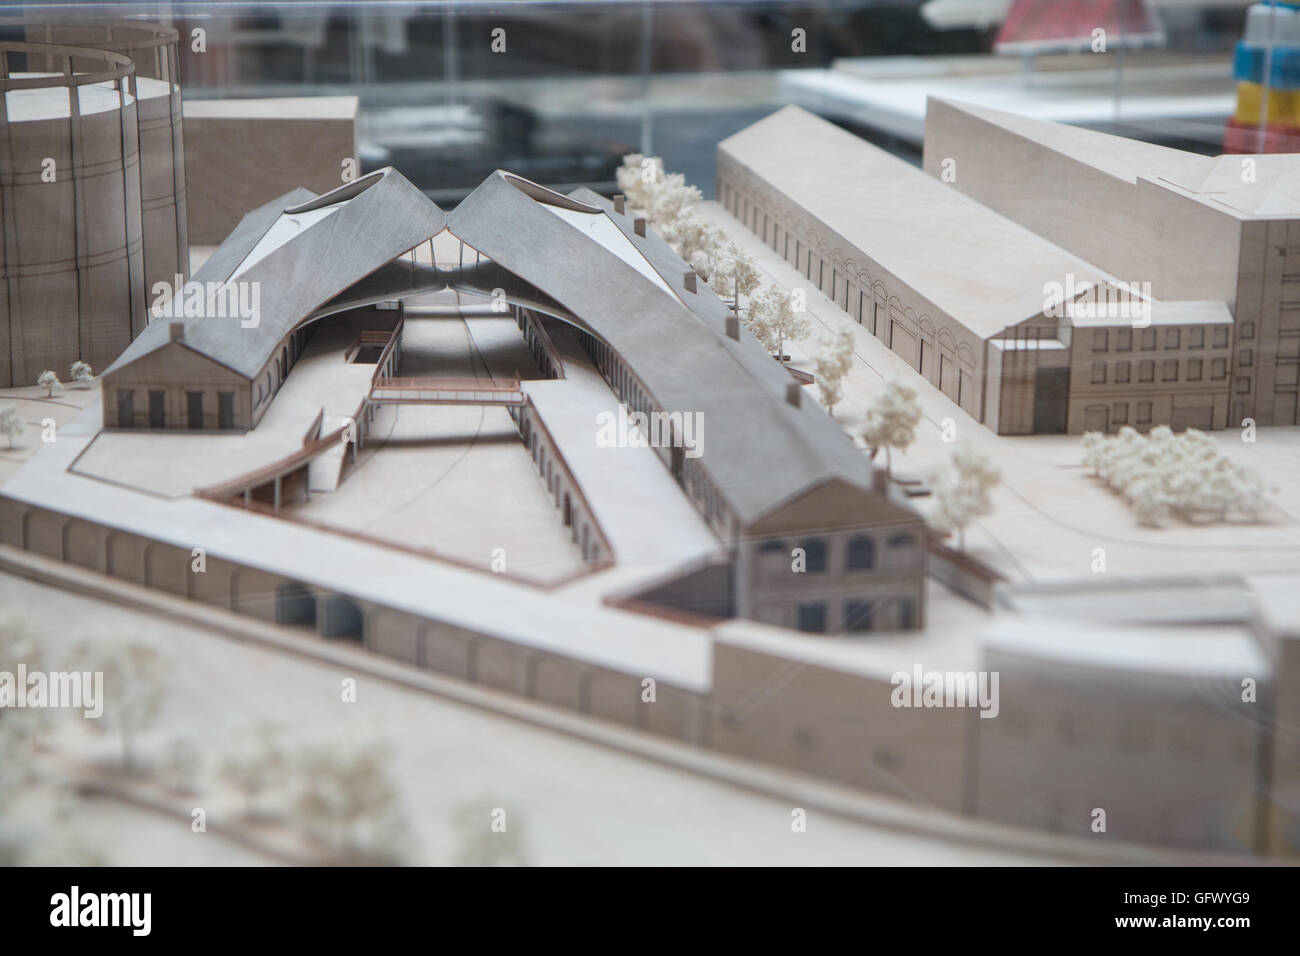 Modello di gocce di carbone di riqualificazione del cantiere da Heatherwick studios Foto Stock